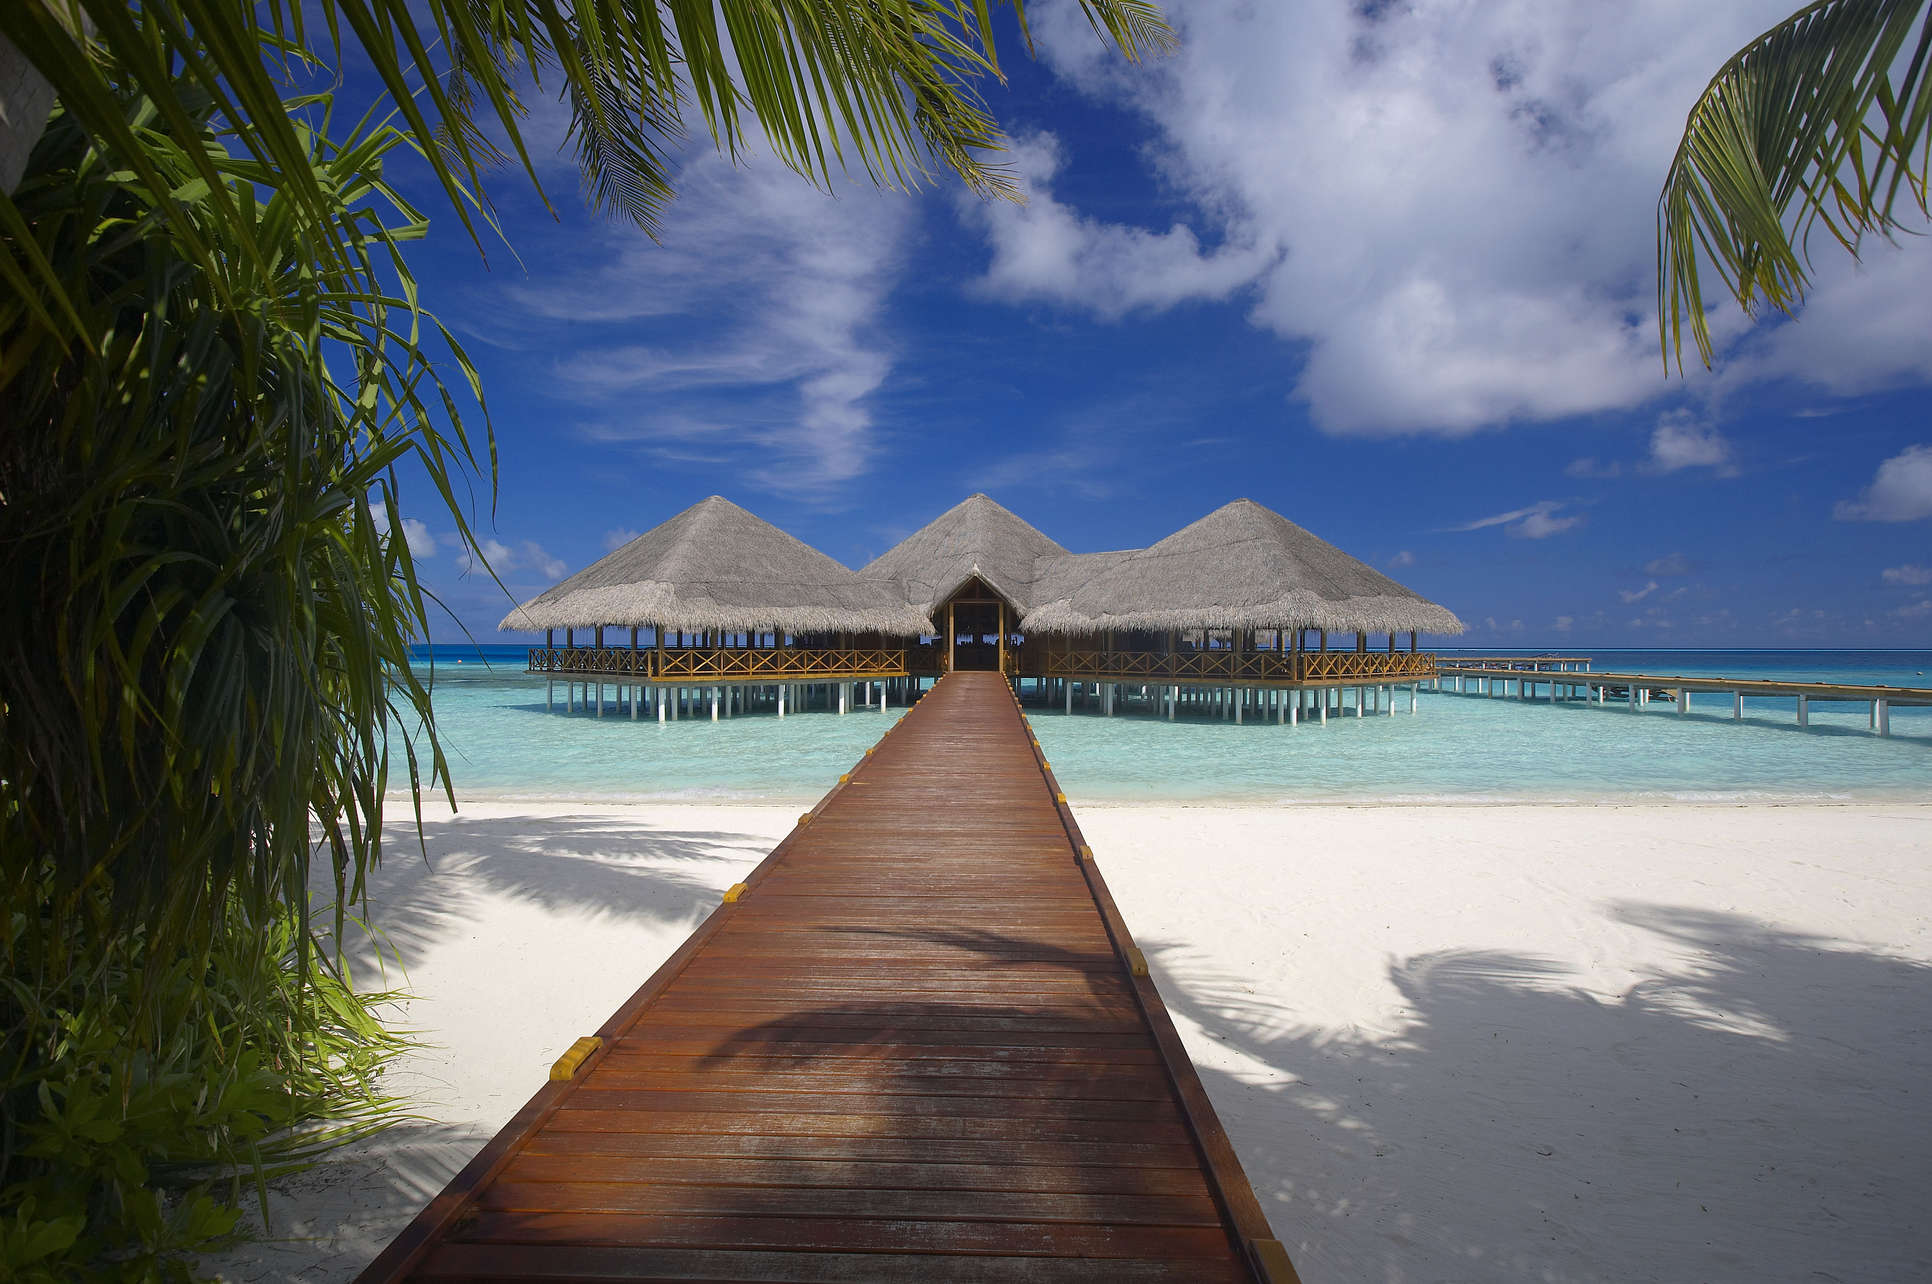 Medhufushi island 5. Мальдивы Medhufushi Island. Остров Медуфуши Мальдивы. Мальдивы Medhufushi Island Resort 5 Мальдивы. Атолл Мииму Мальдивы.